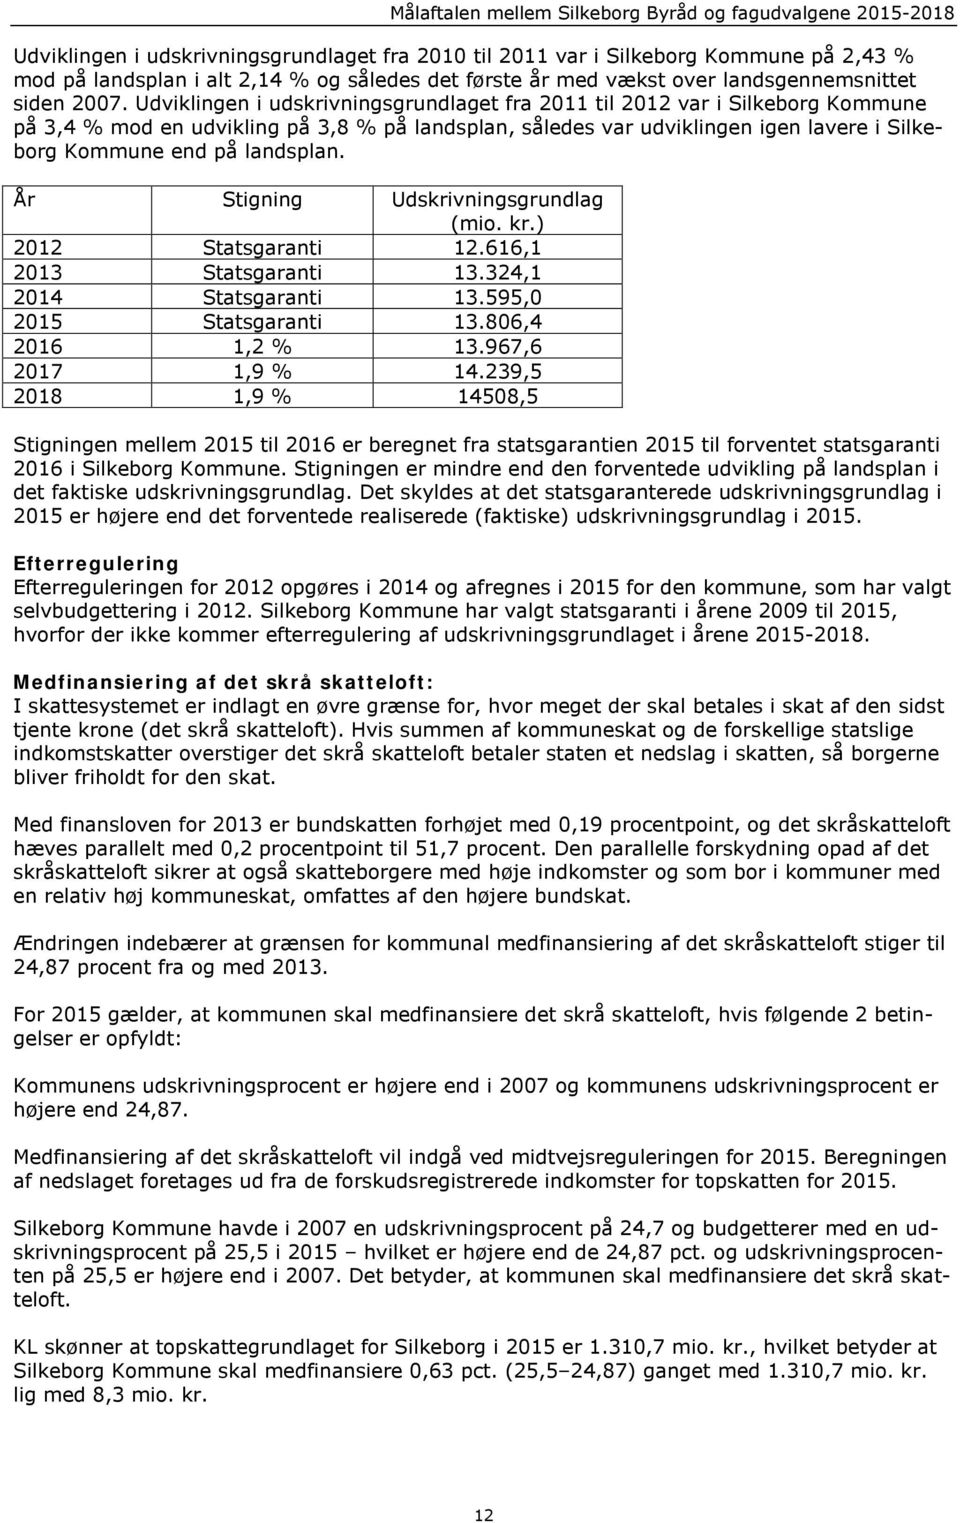 Udviklingen i udskrivningsgrundlaget fra 2011 til 2012 var i Silkeborg Kommune på 3,4 % mod en udvikling på 3,8 % på landsplan, således var udviklingen igen lavere i Silkeborg Kommune end på